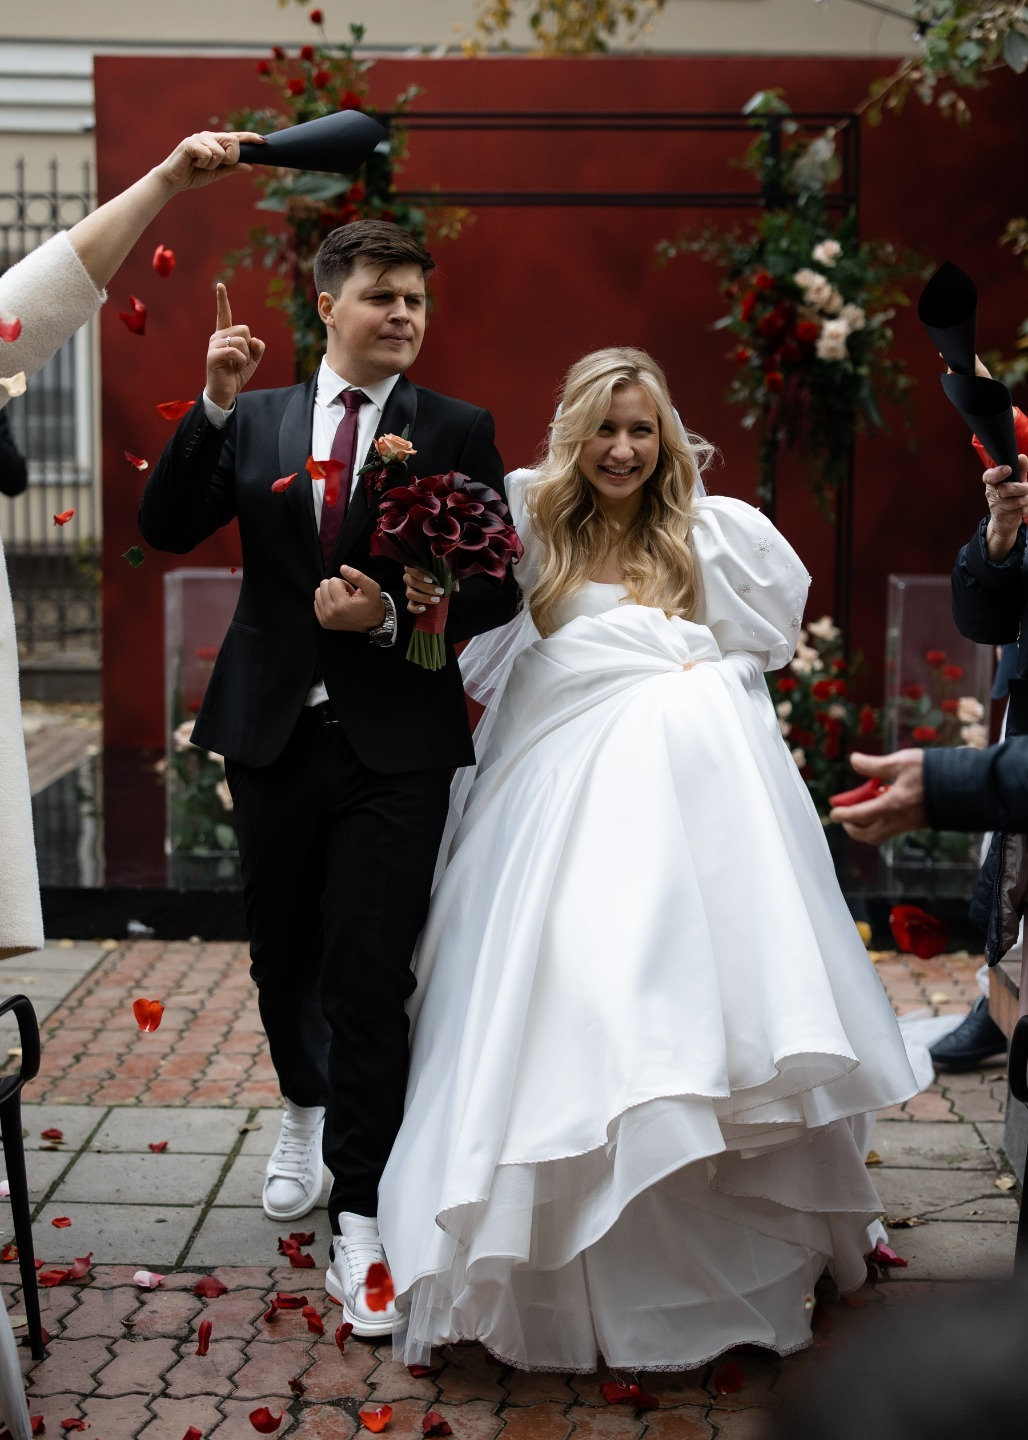 Аллилуйя любви: свадьба в бордовой палитре